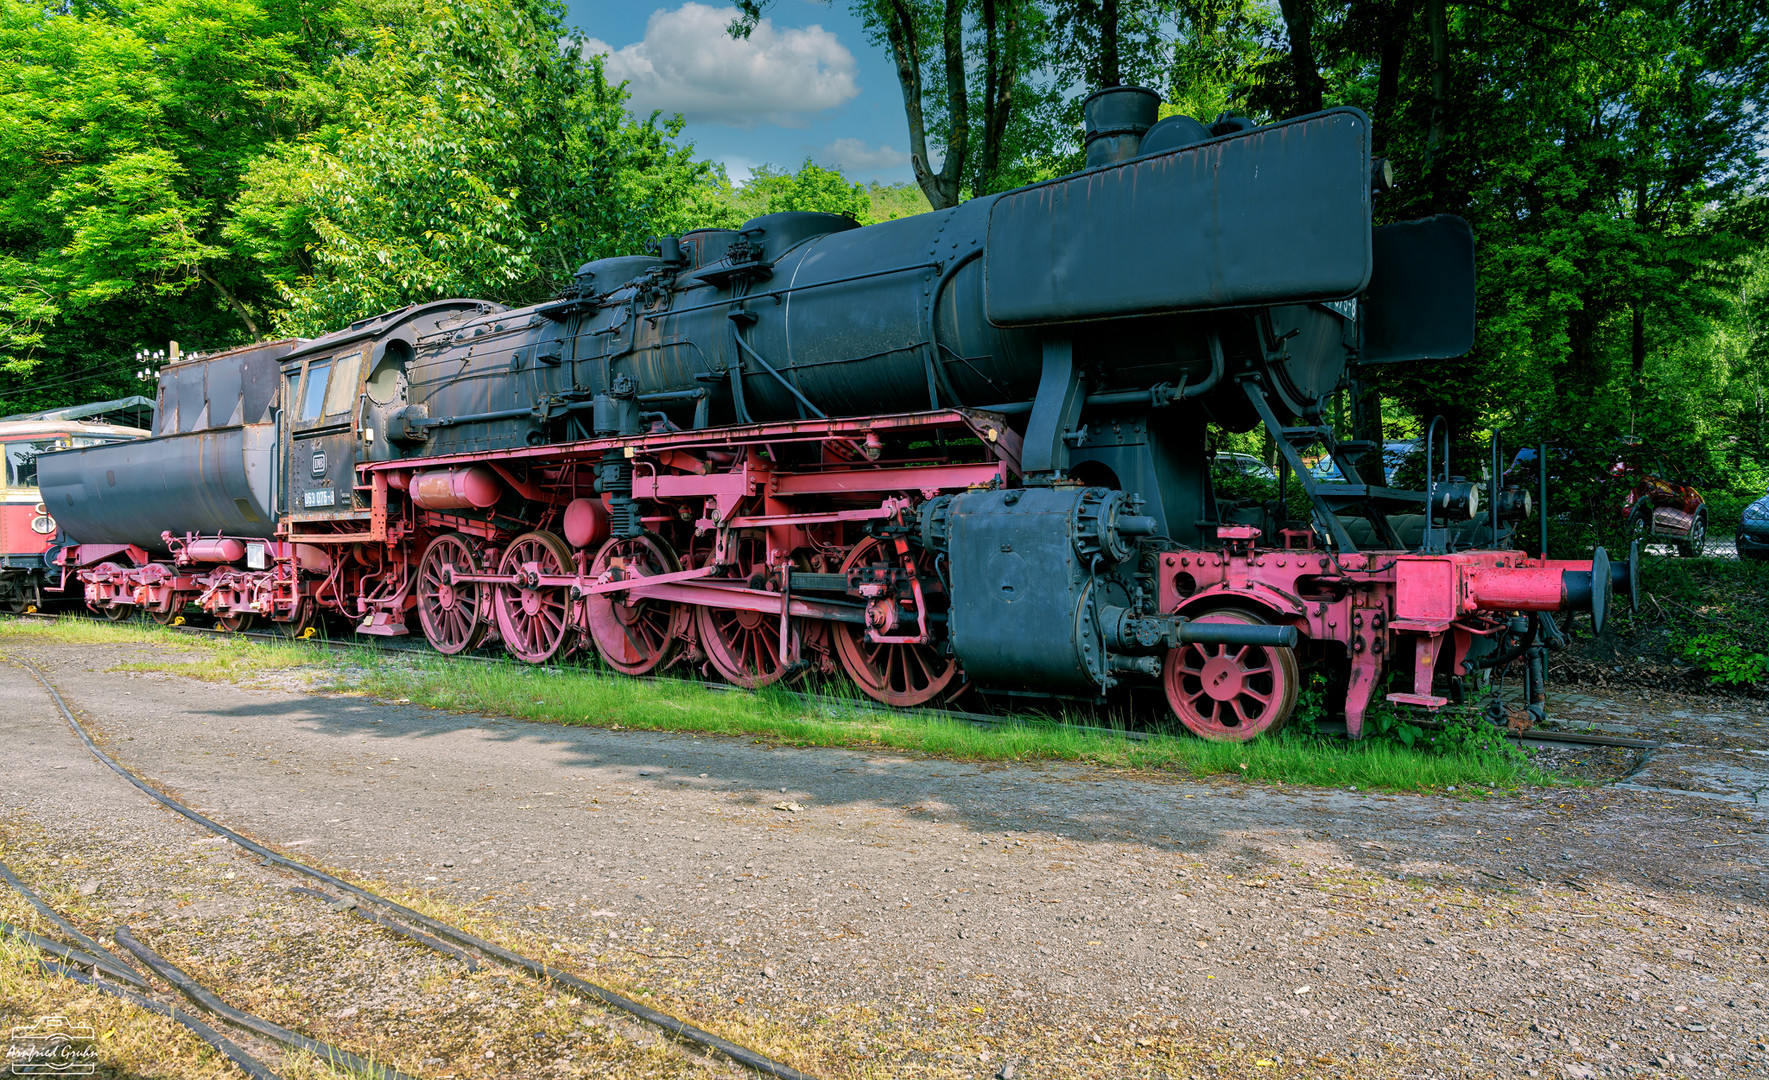 Eisenbahnmuseum Bochum